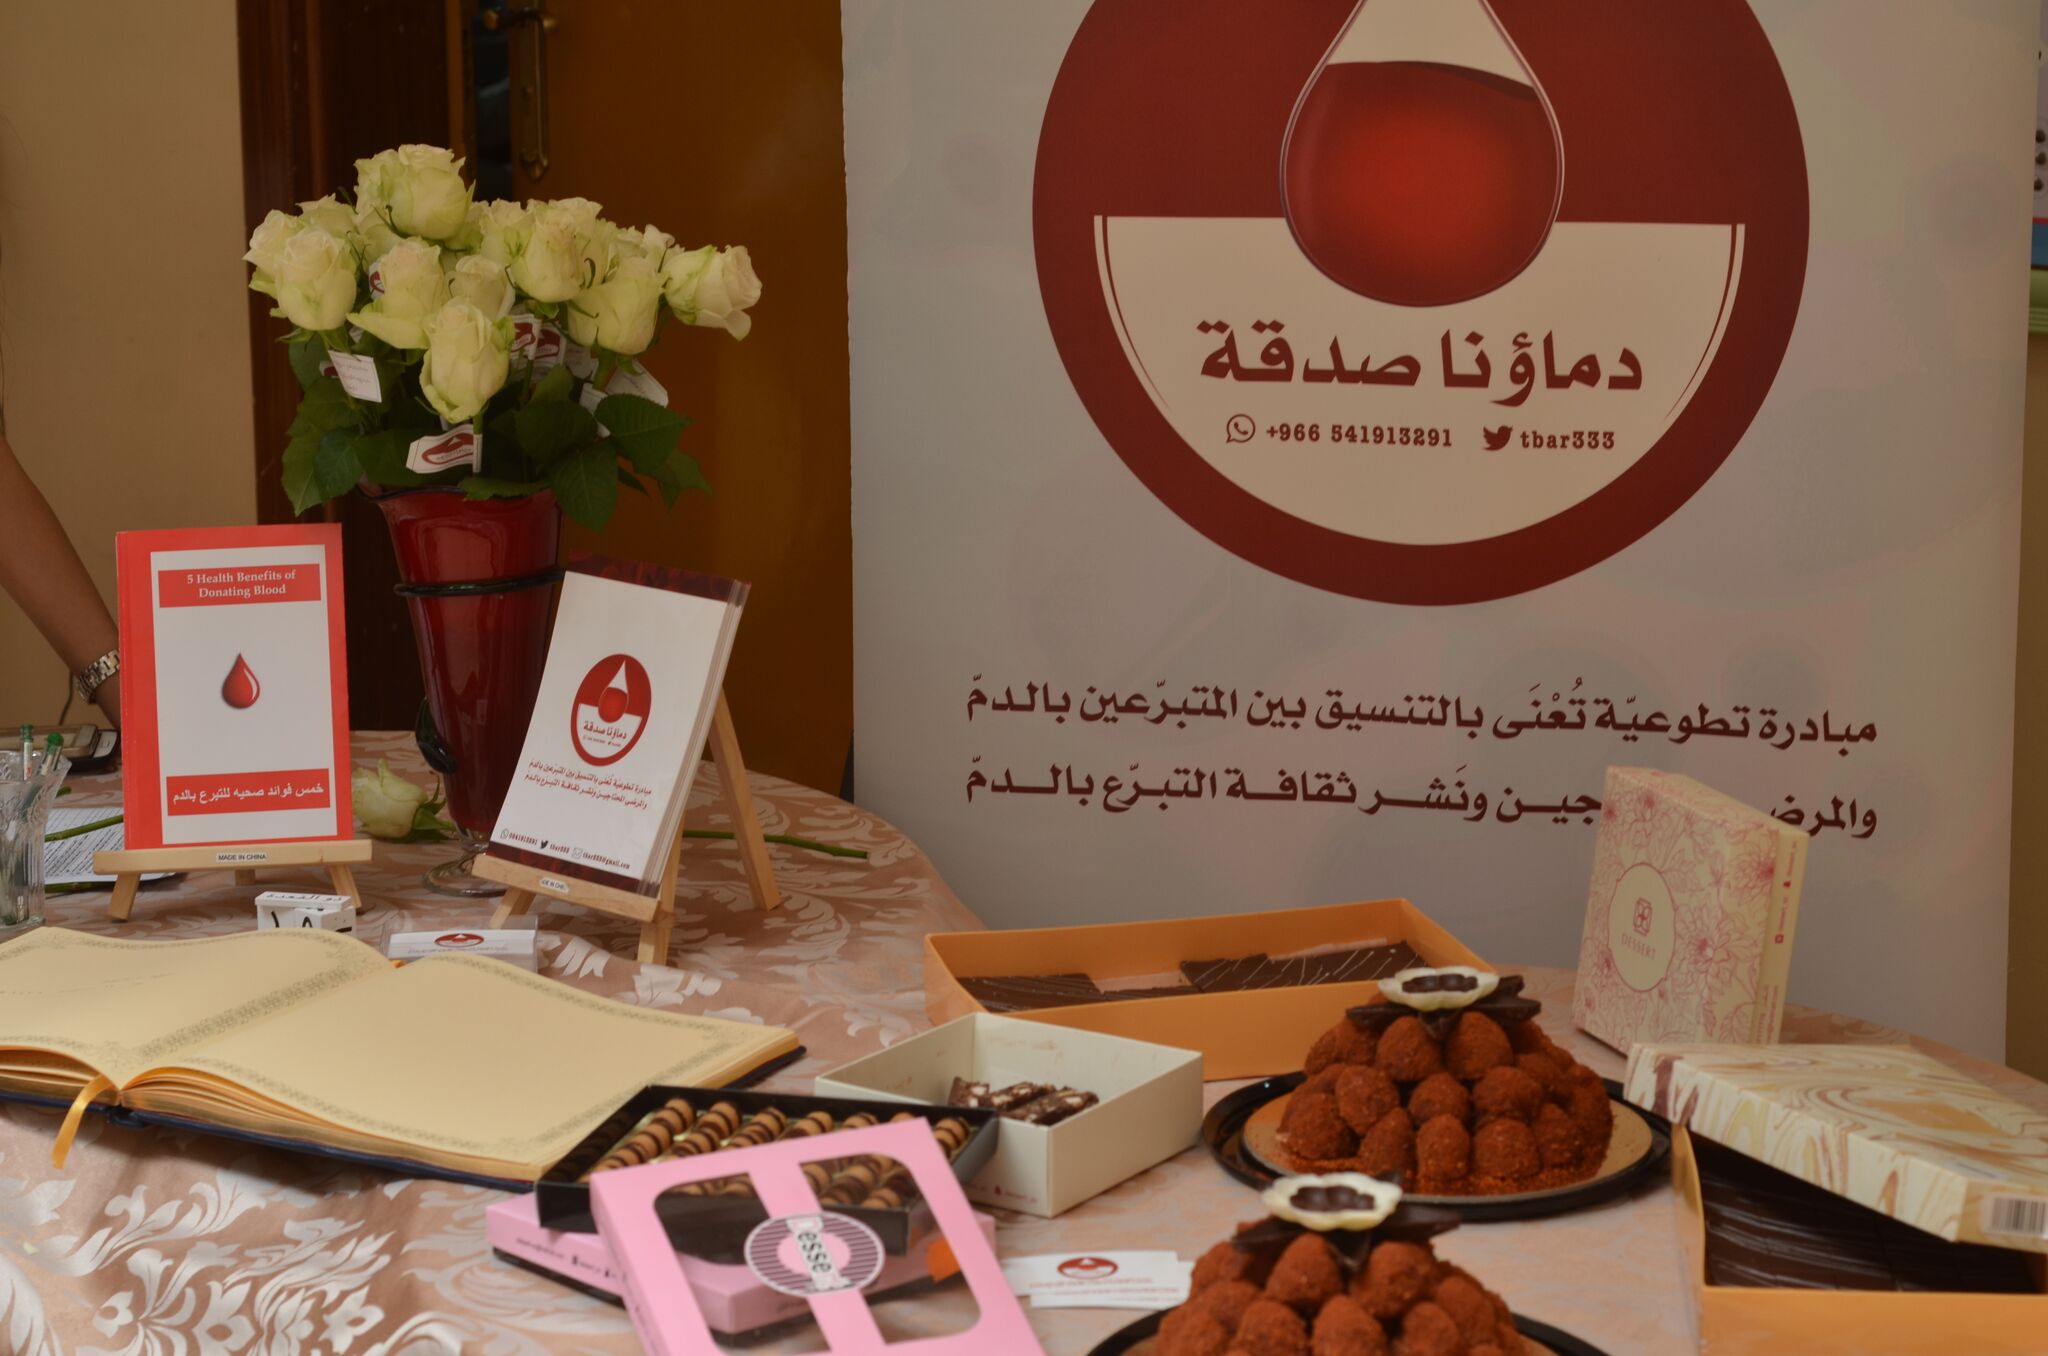 بالصور.. حملة للتبرع بالدم لصالح مستشفى الإمام الفيصل